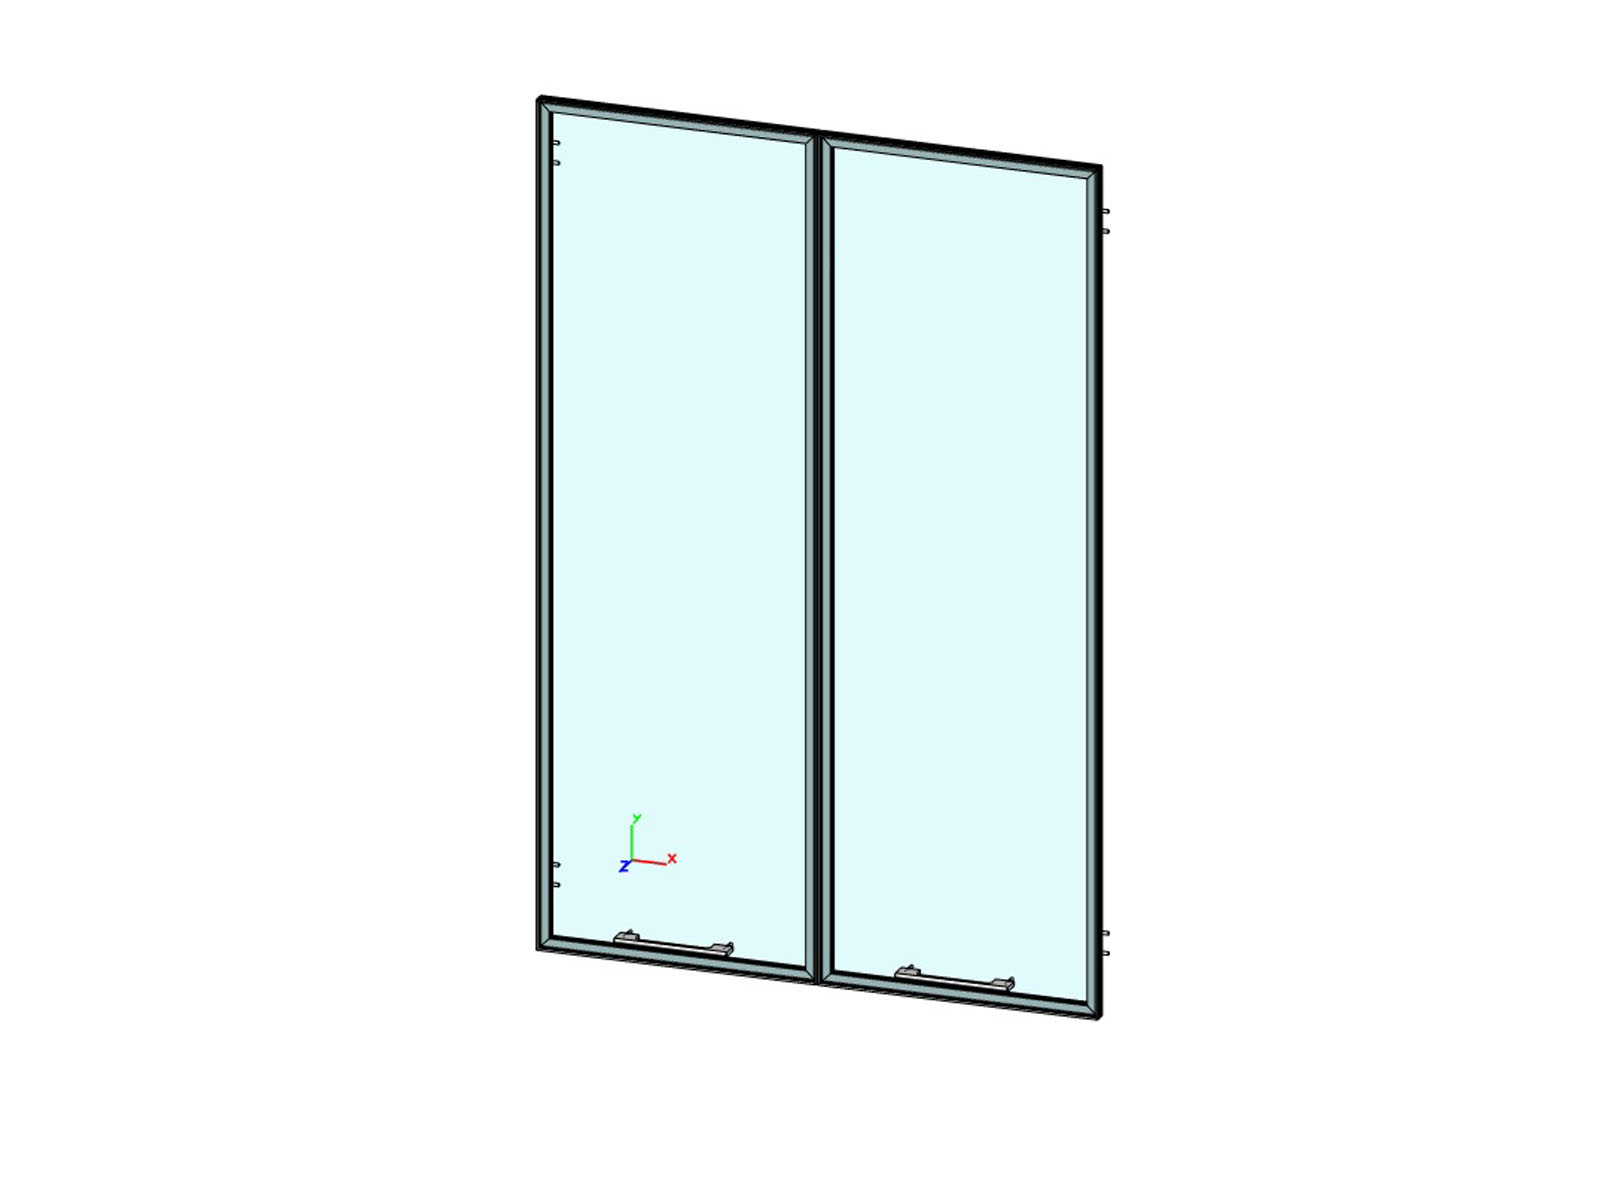 Двери средние стеклянные (прозрачные) в алюминевой рамке JNO500.G (Директория) фото 0